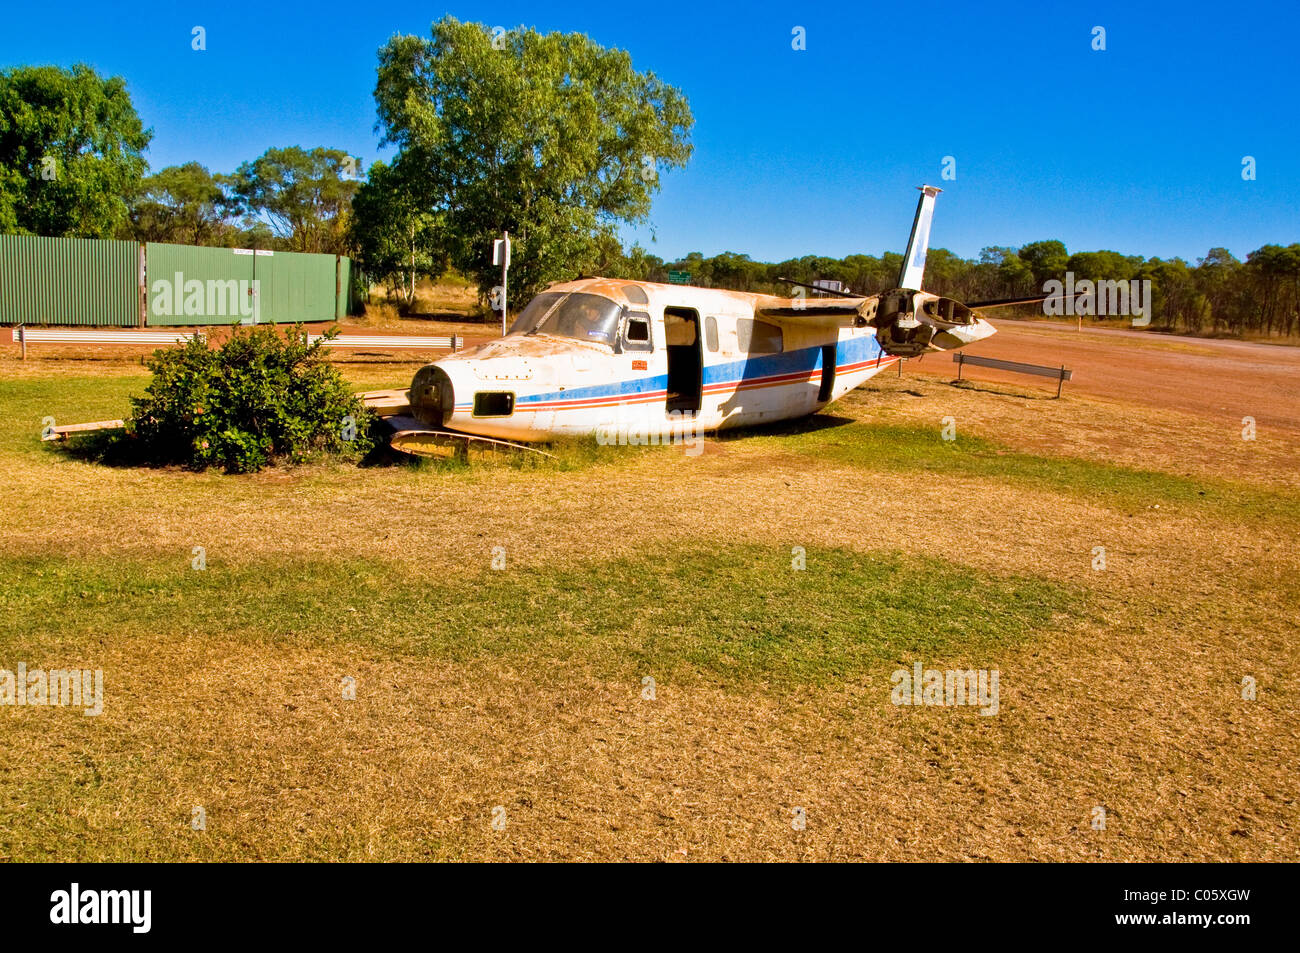 L'avion accidenté dans l'outback australien Banque D'Images